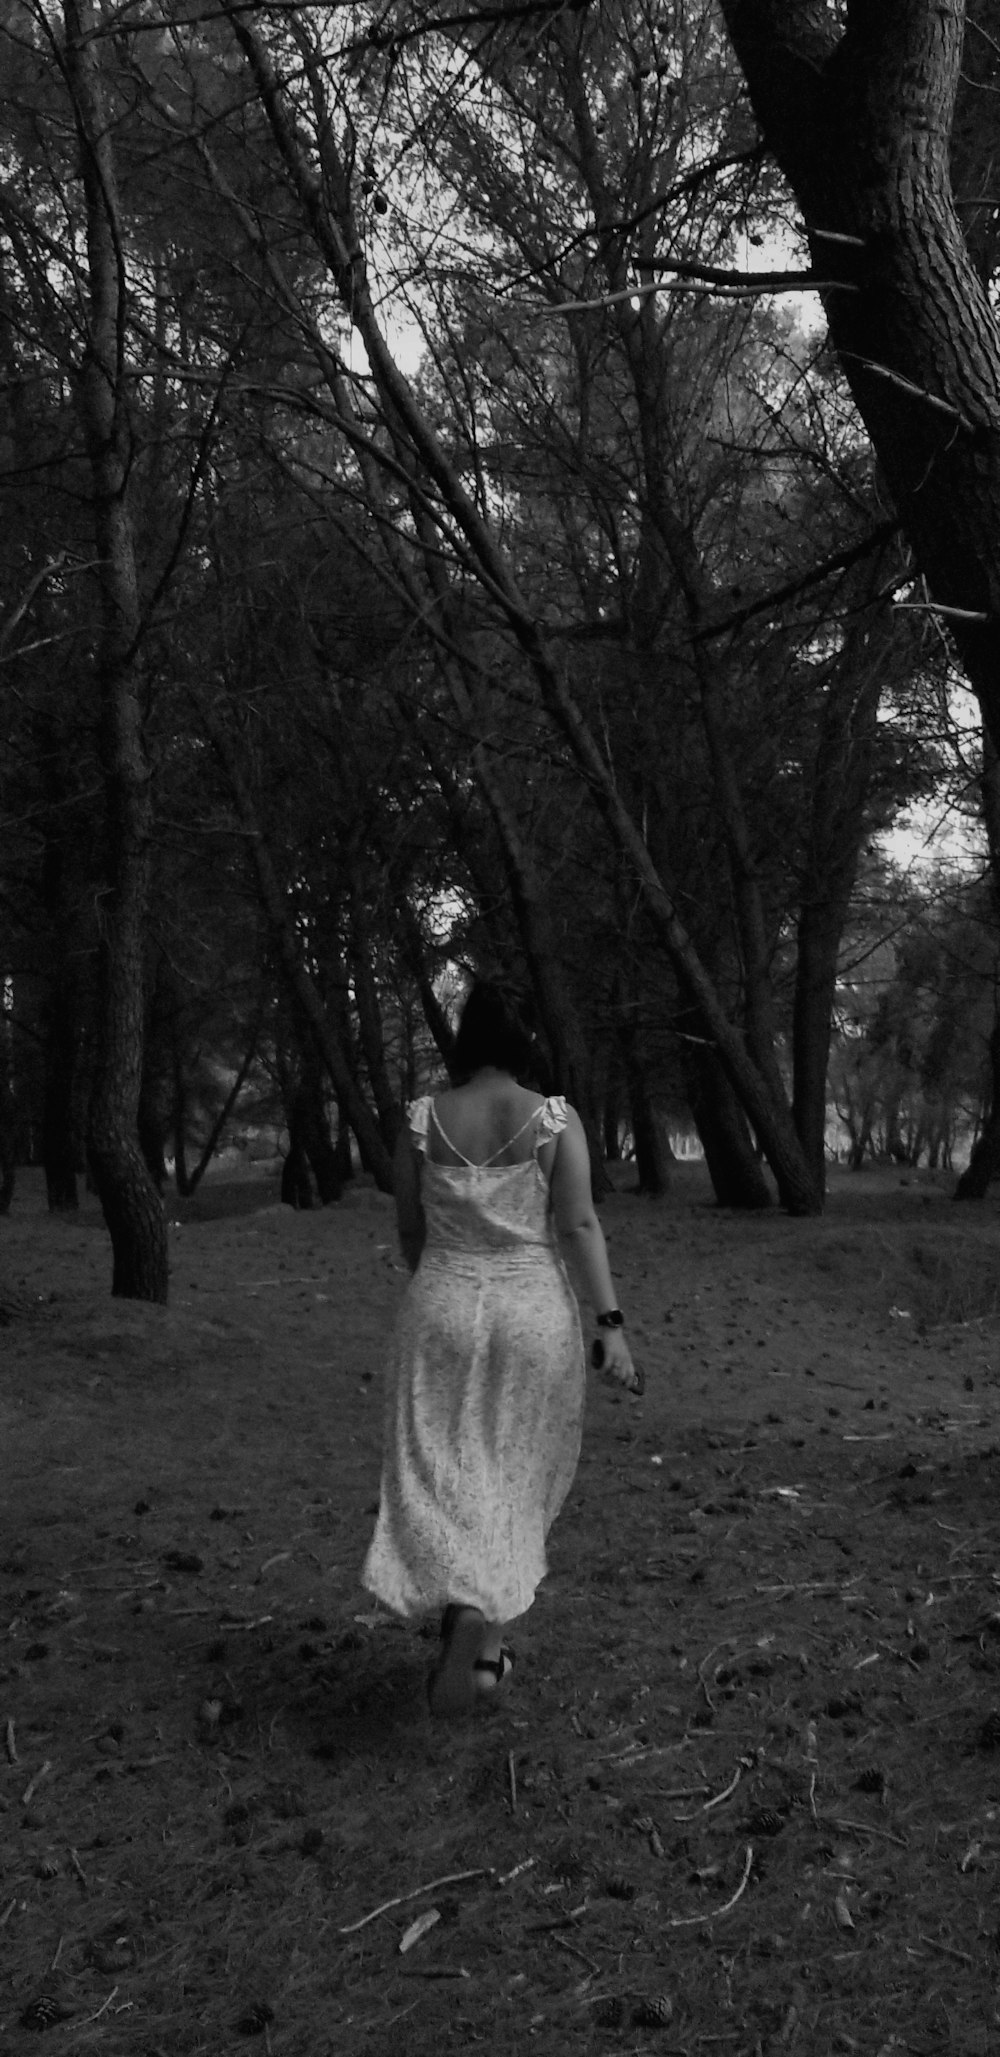 Photographie en niveaux de gris d’une femme marchant entourée d’arbres